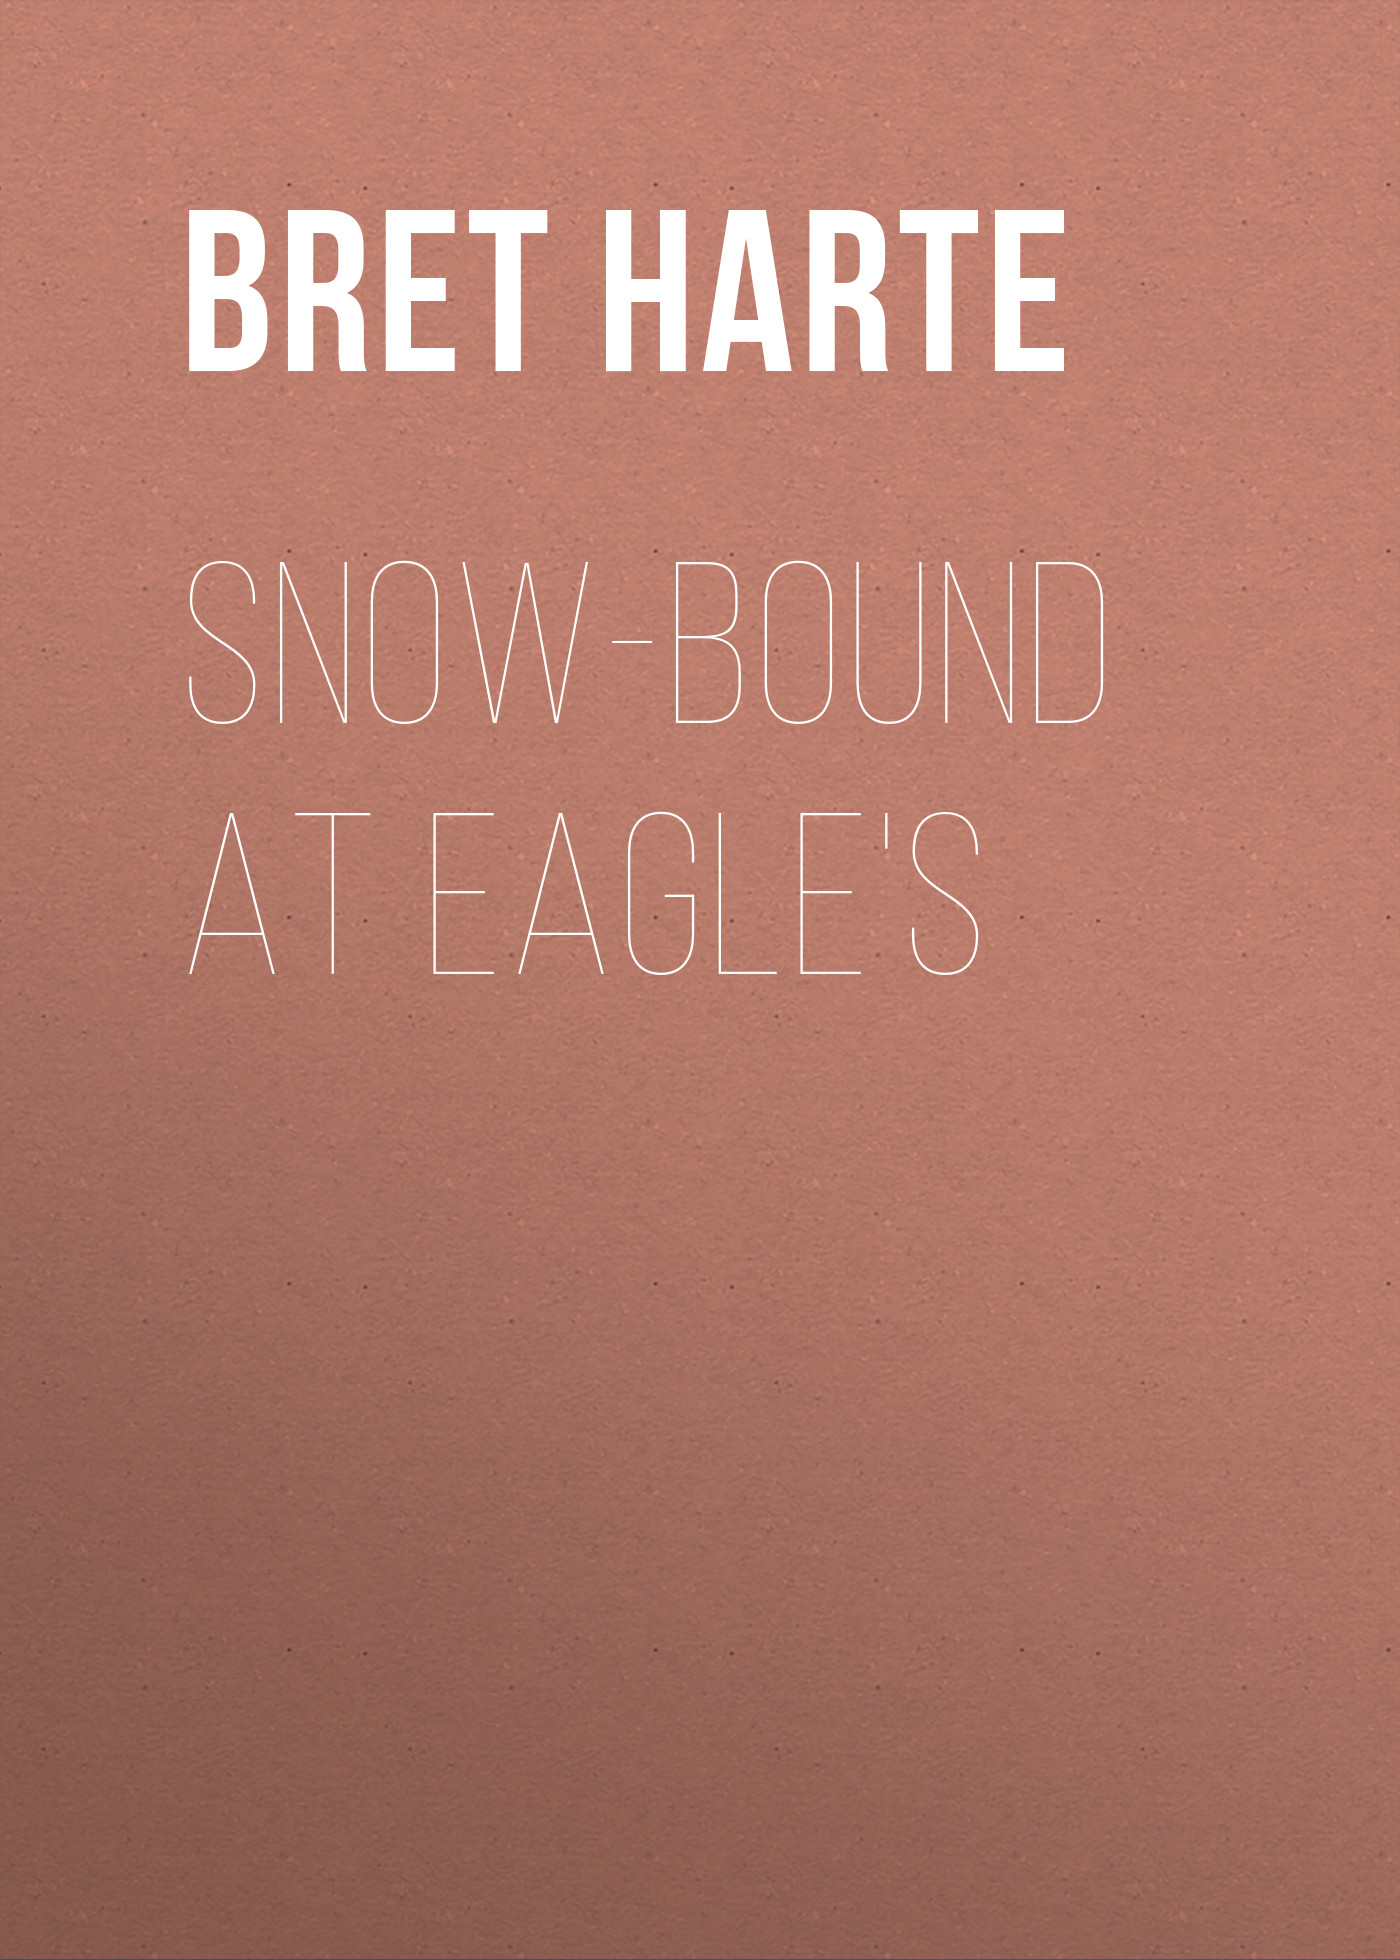 Книга Snow-Bound at Eagle's из серии , созданная Bret Harte, может относится к жанру Зарубежная фантастика, Литература 19 века, Зарубежная старинная литература, Зарубежная классика. Стоимость электронной книги Snow-Bound at Eagle's с идентификатором 36322196 составляет 0 руб.